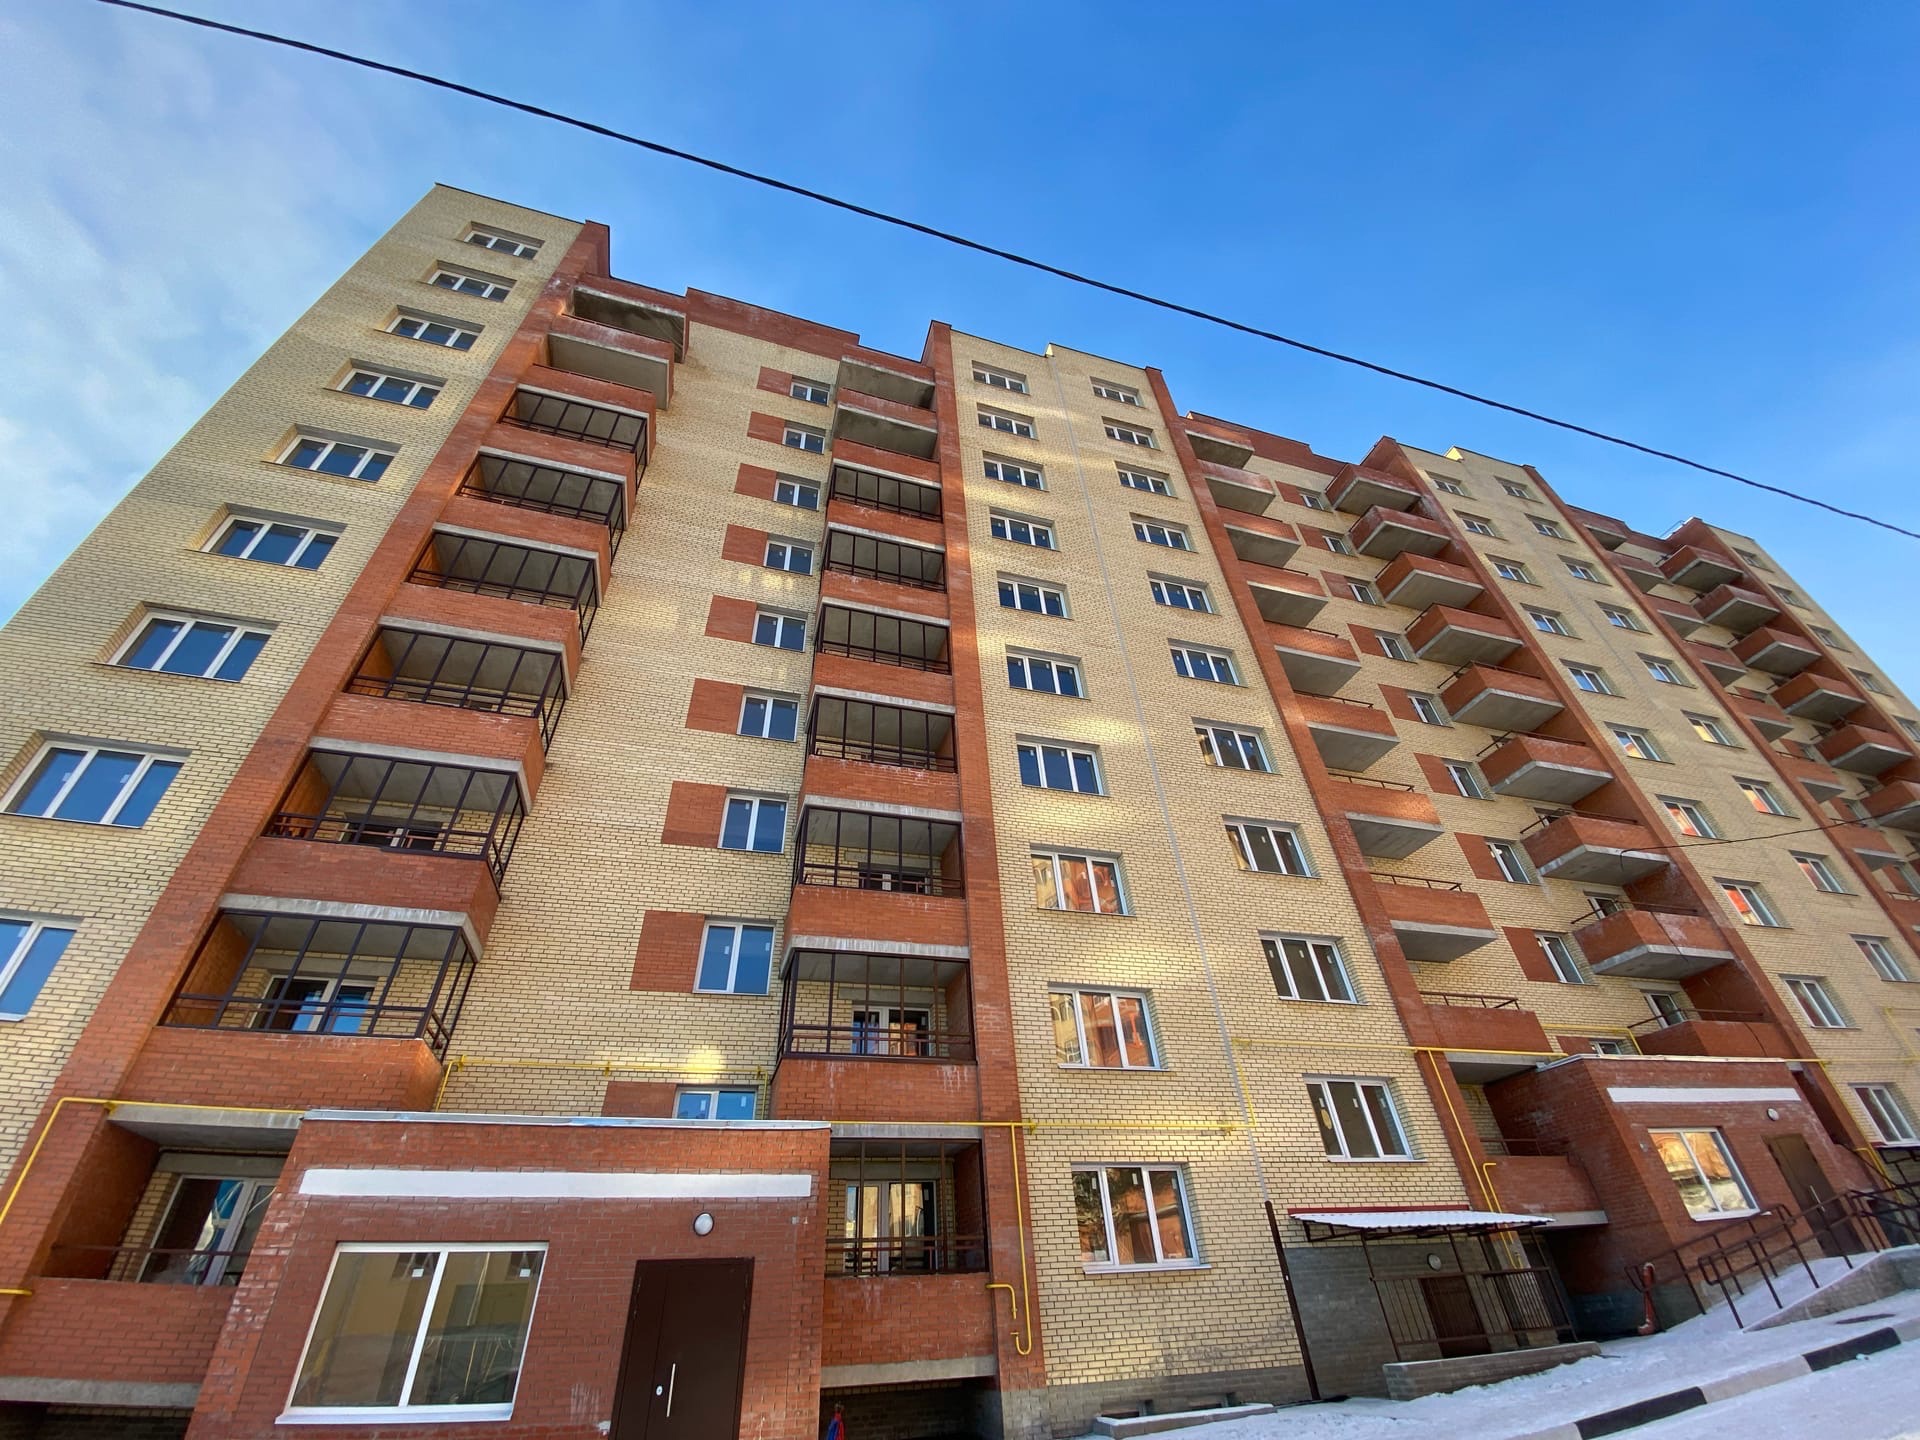 Проблемный дом на улице Слепнева в Ярославле сдадут в декабре